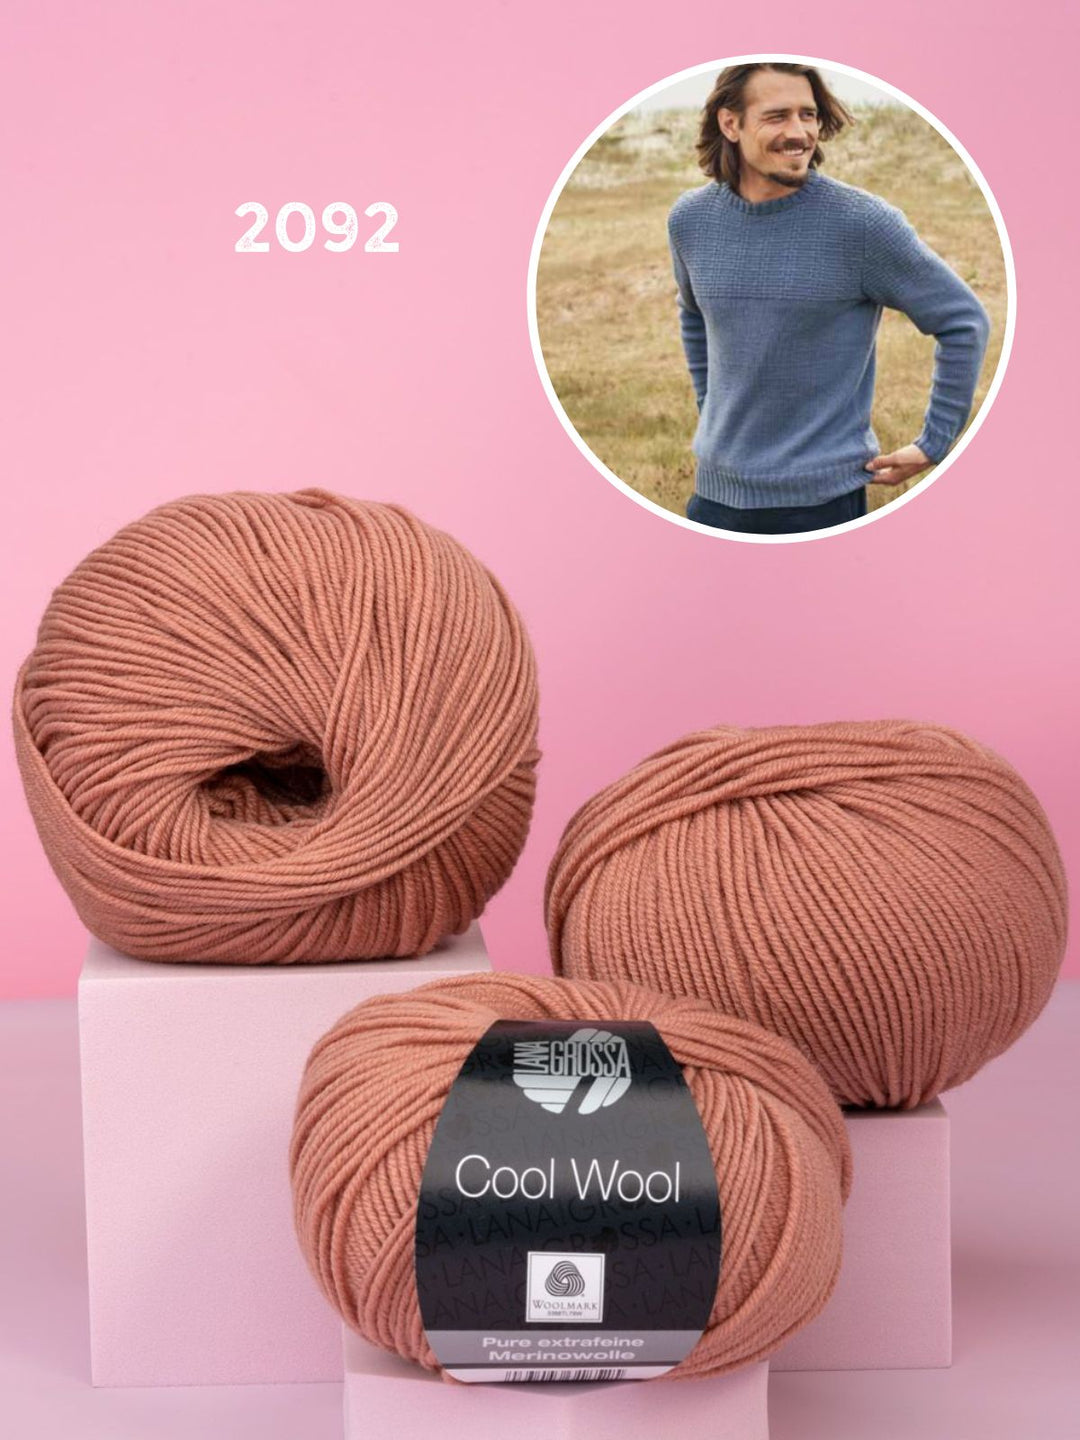 Breipakket Cool Wool herentrui